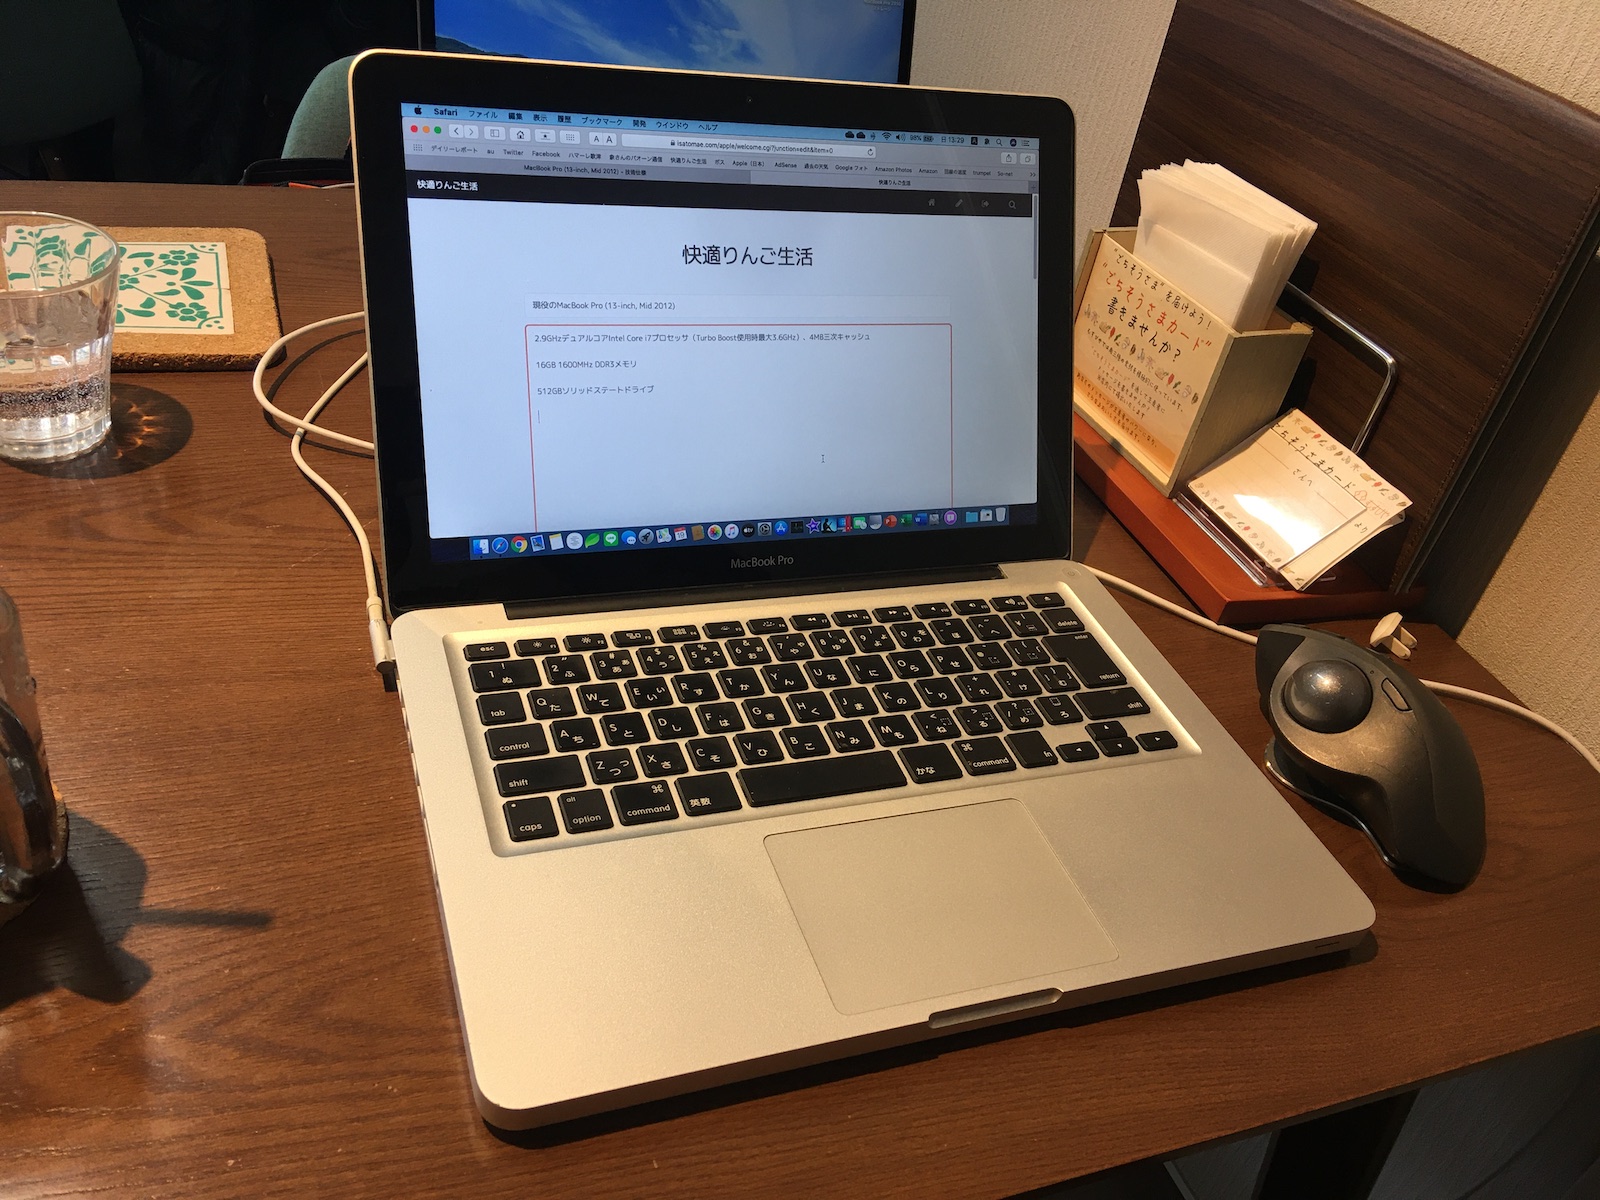 激安価格・送料无料 【メモリ16GB】MacBookPro 2012) Mid (13-inch ノートPC